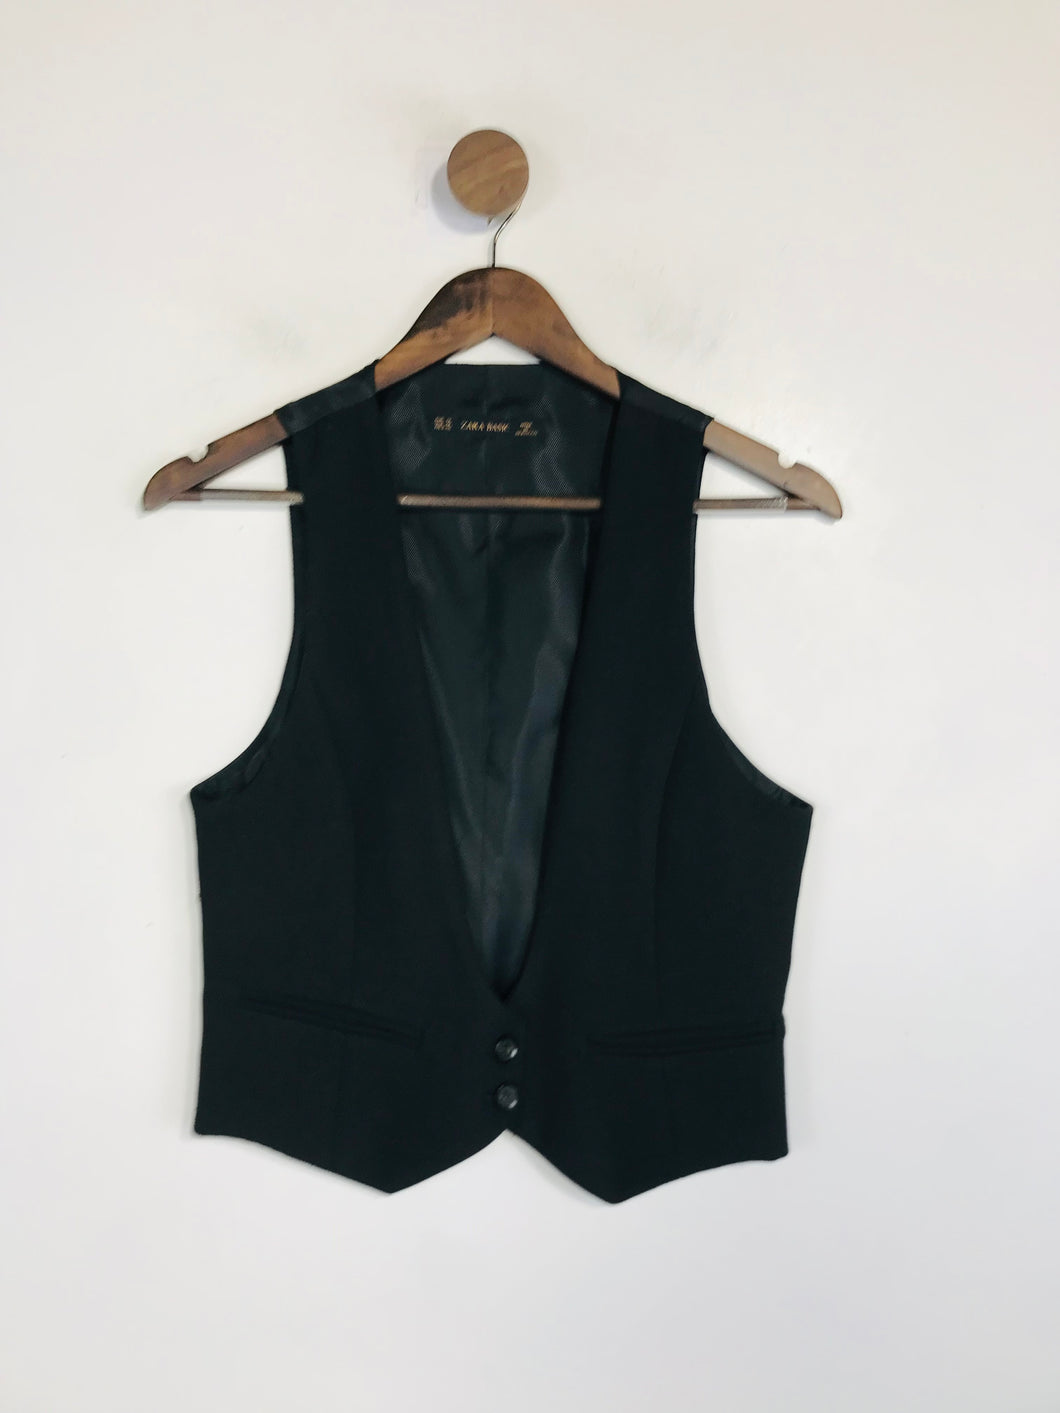 Zara Women's Waistcoat Jacket | M UK10-12 | Black